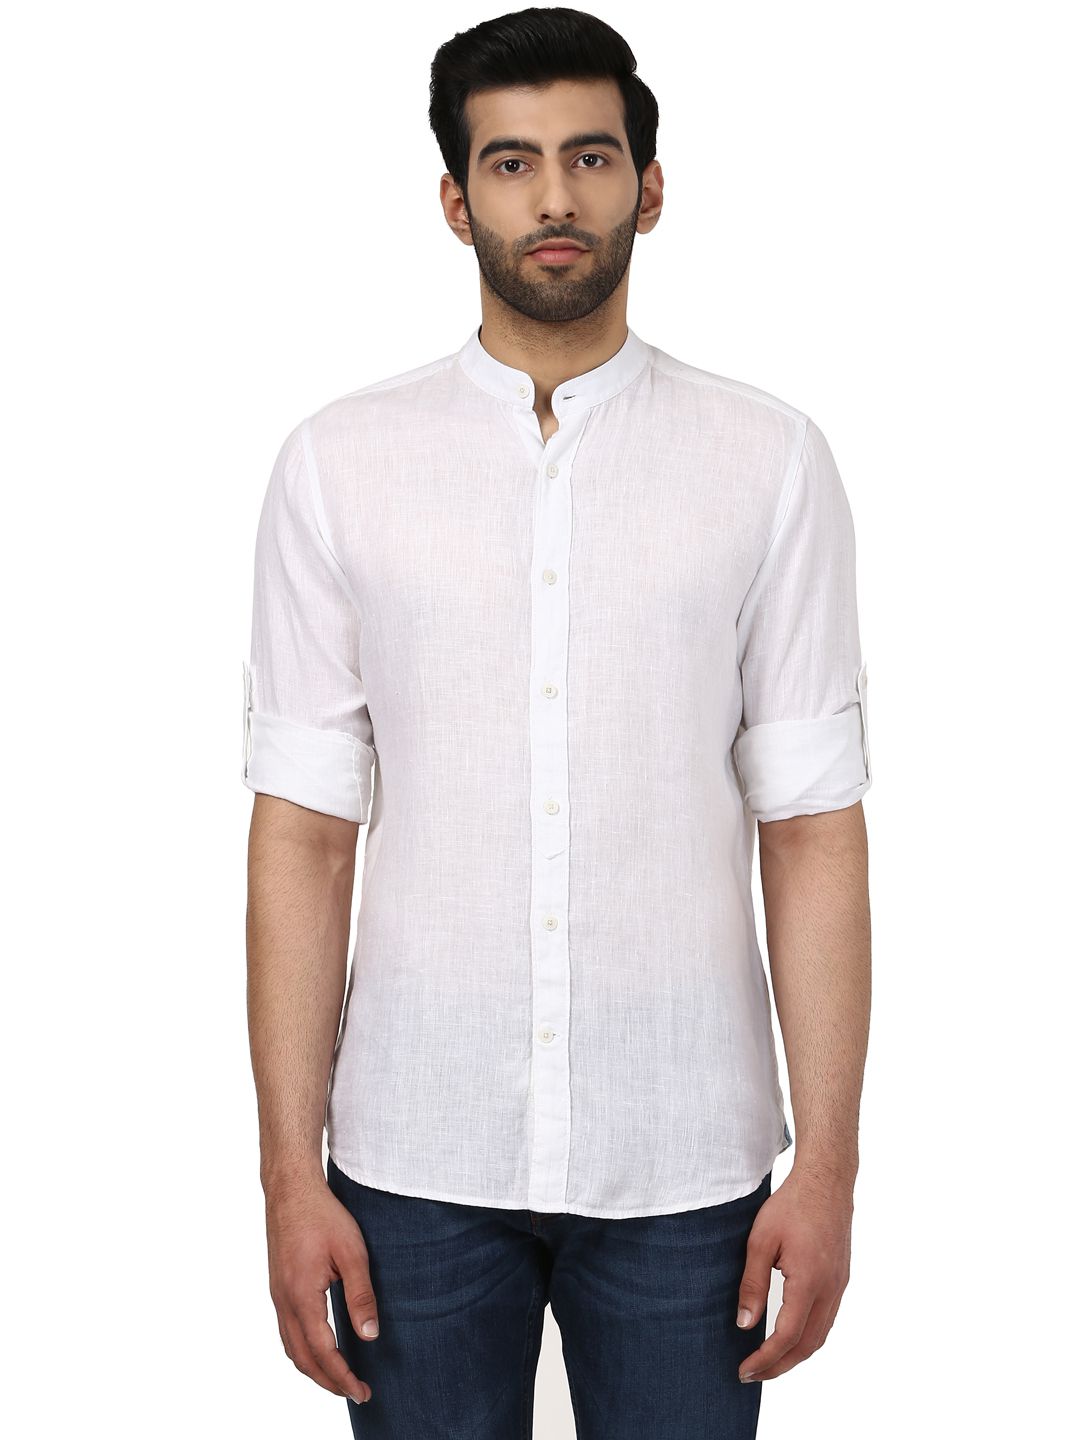 Raymond White Regular Fit Shirt - Buy Raymond White Regular Fit Shirt ...